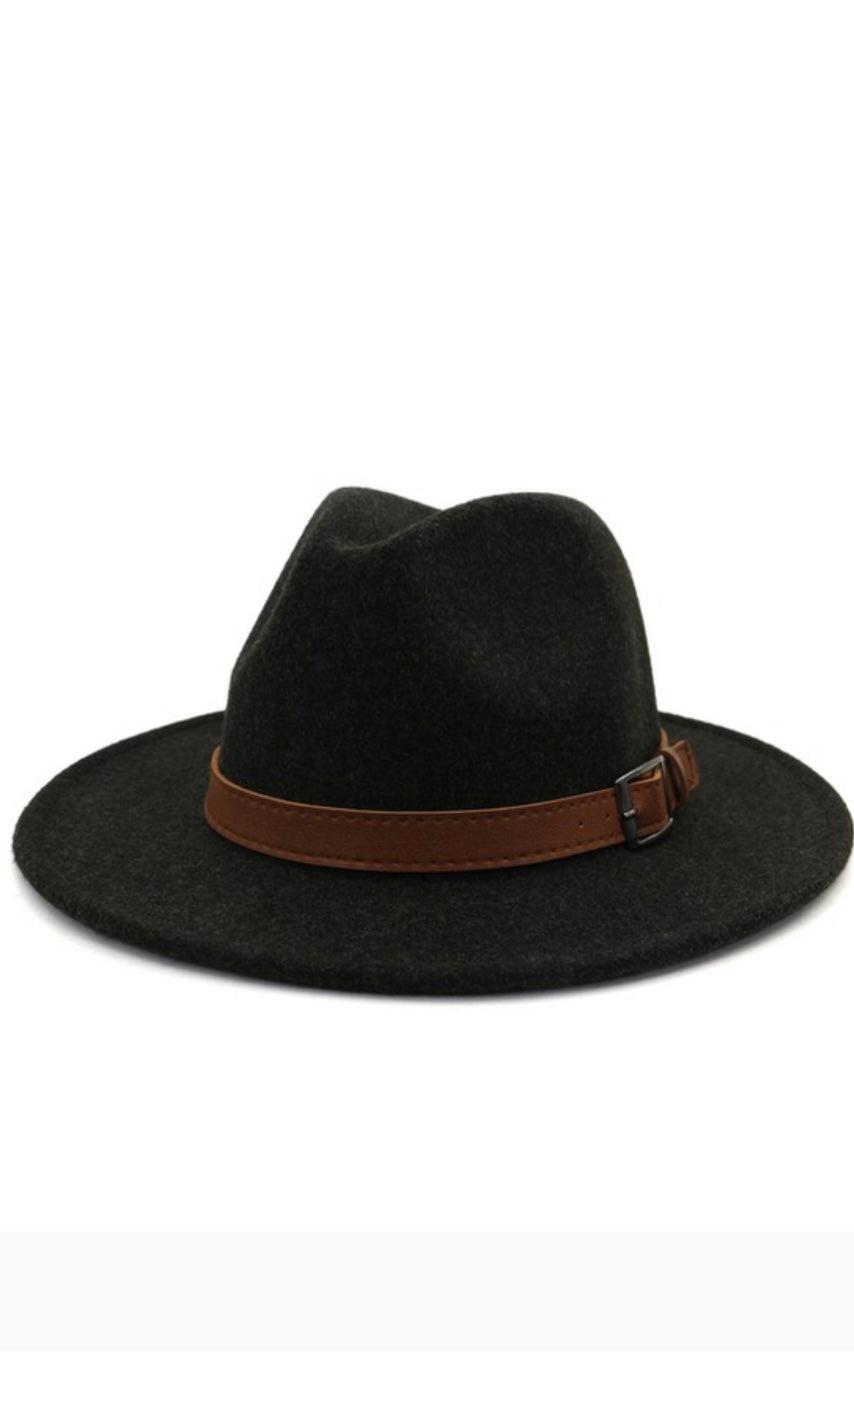 Cane Black Essential Wool Felt Panama Hard Brim Hat